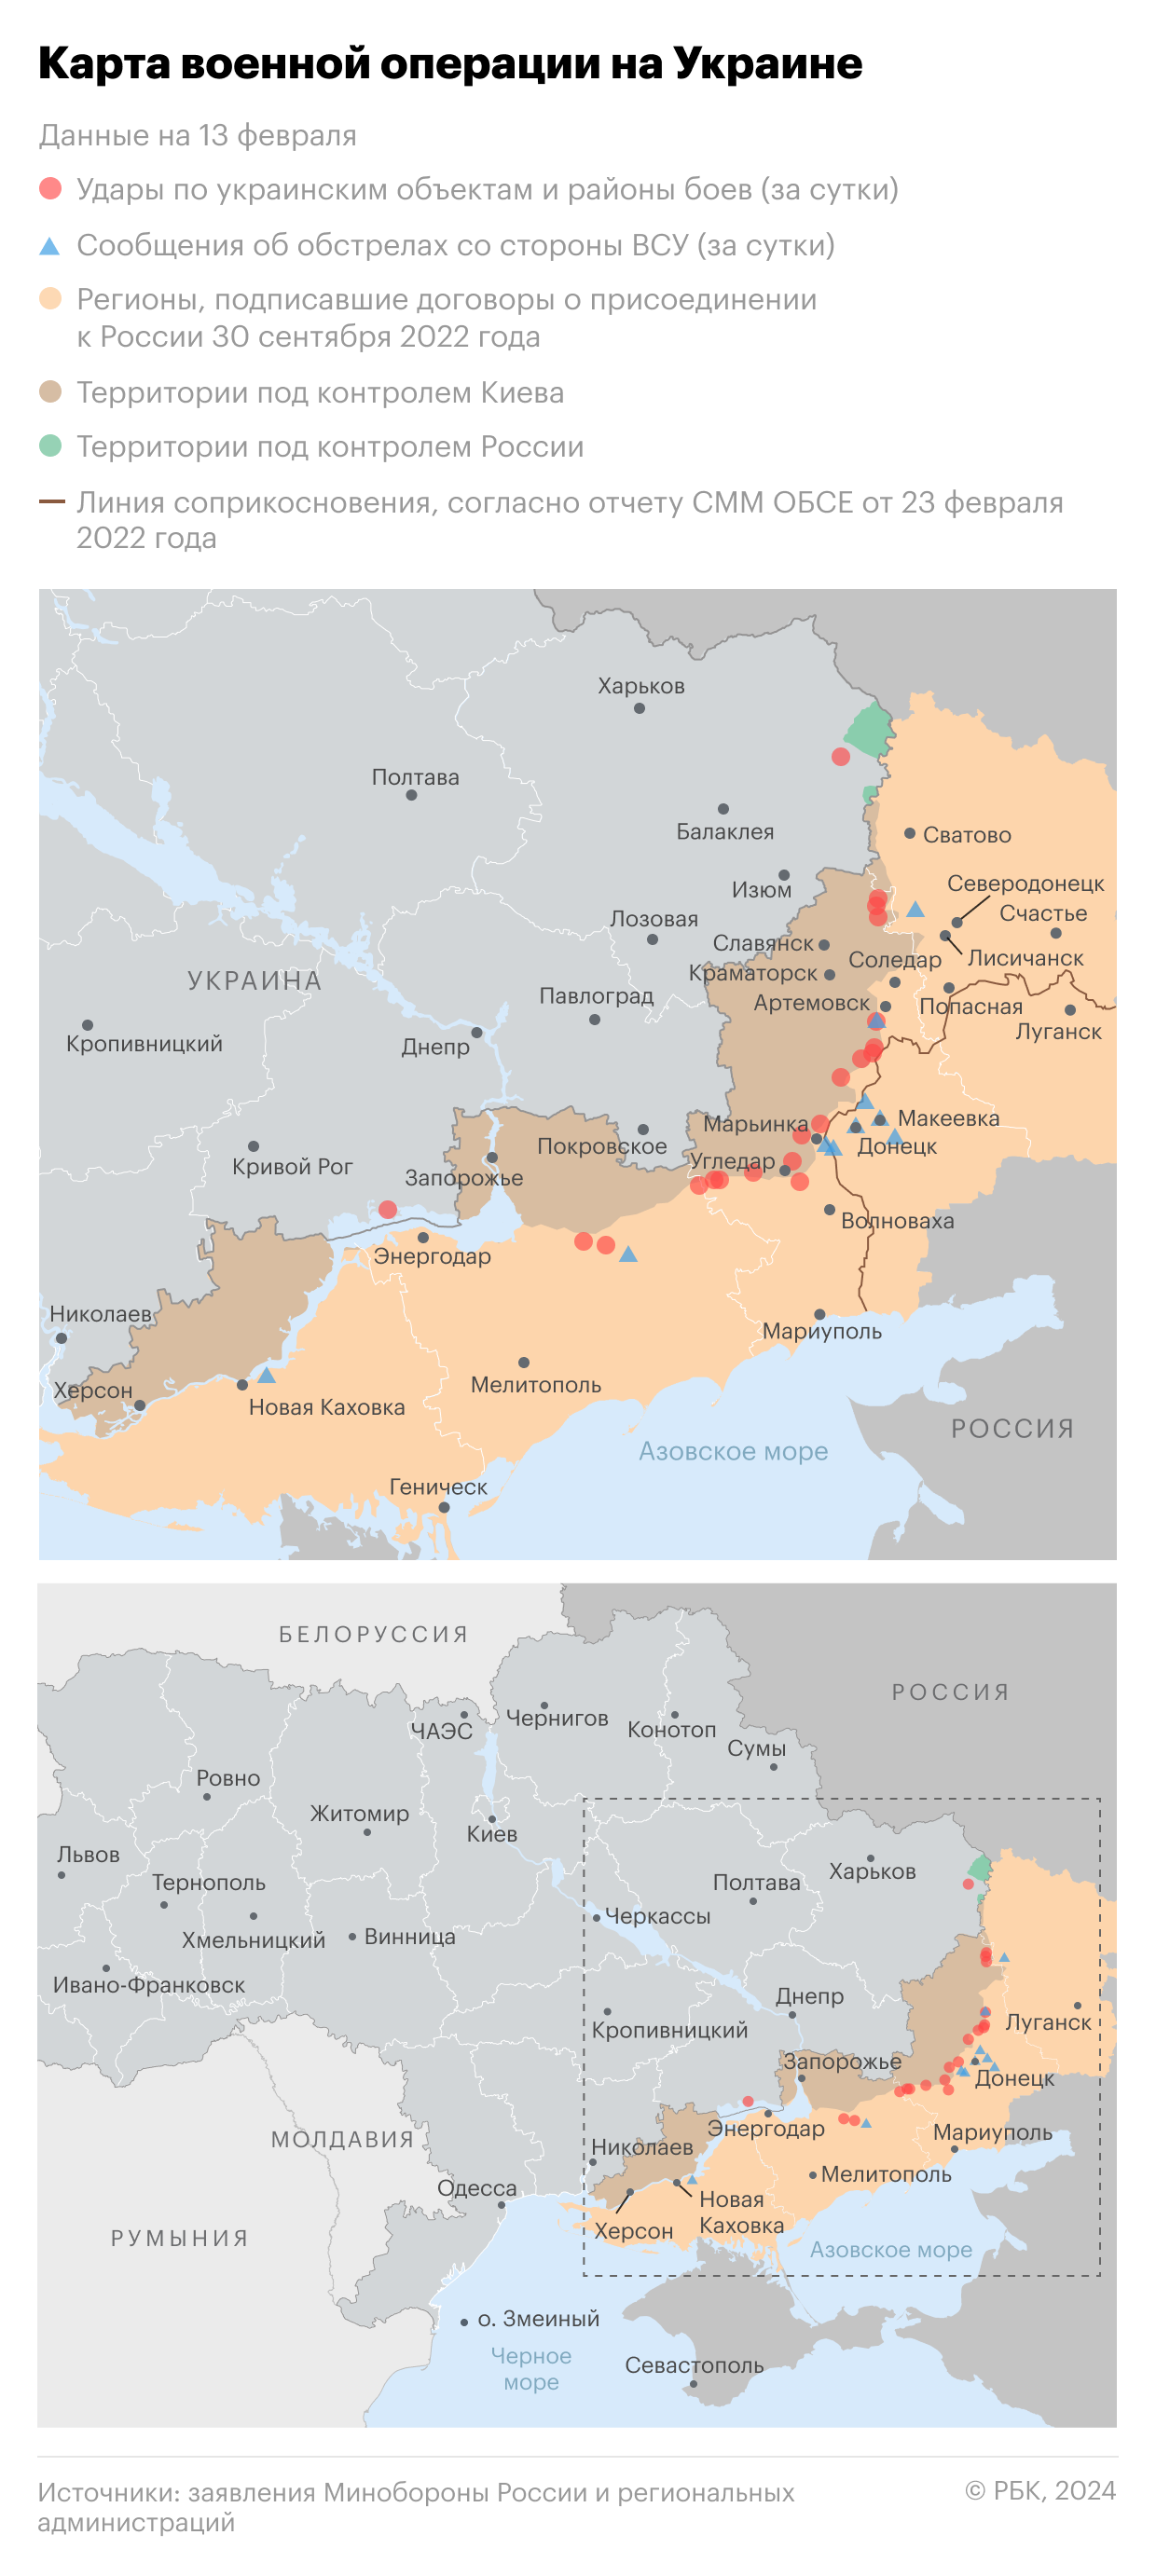 Военная операция на Украине. Карта на 13 февраля